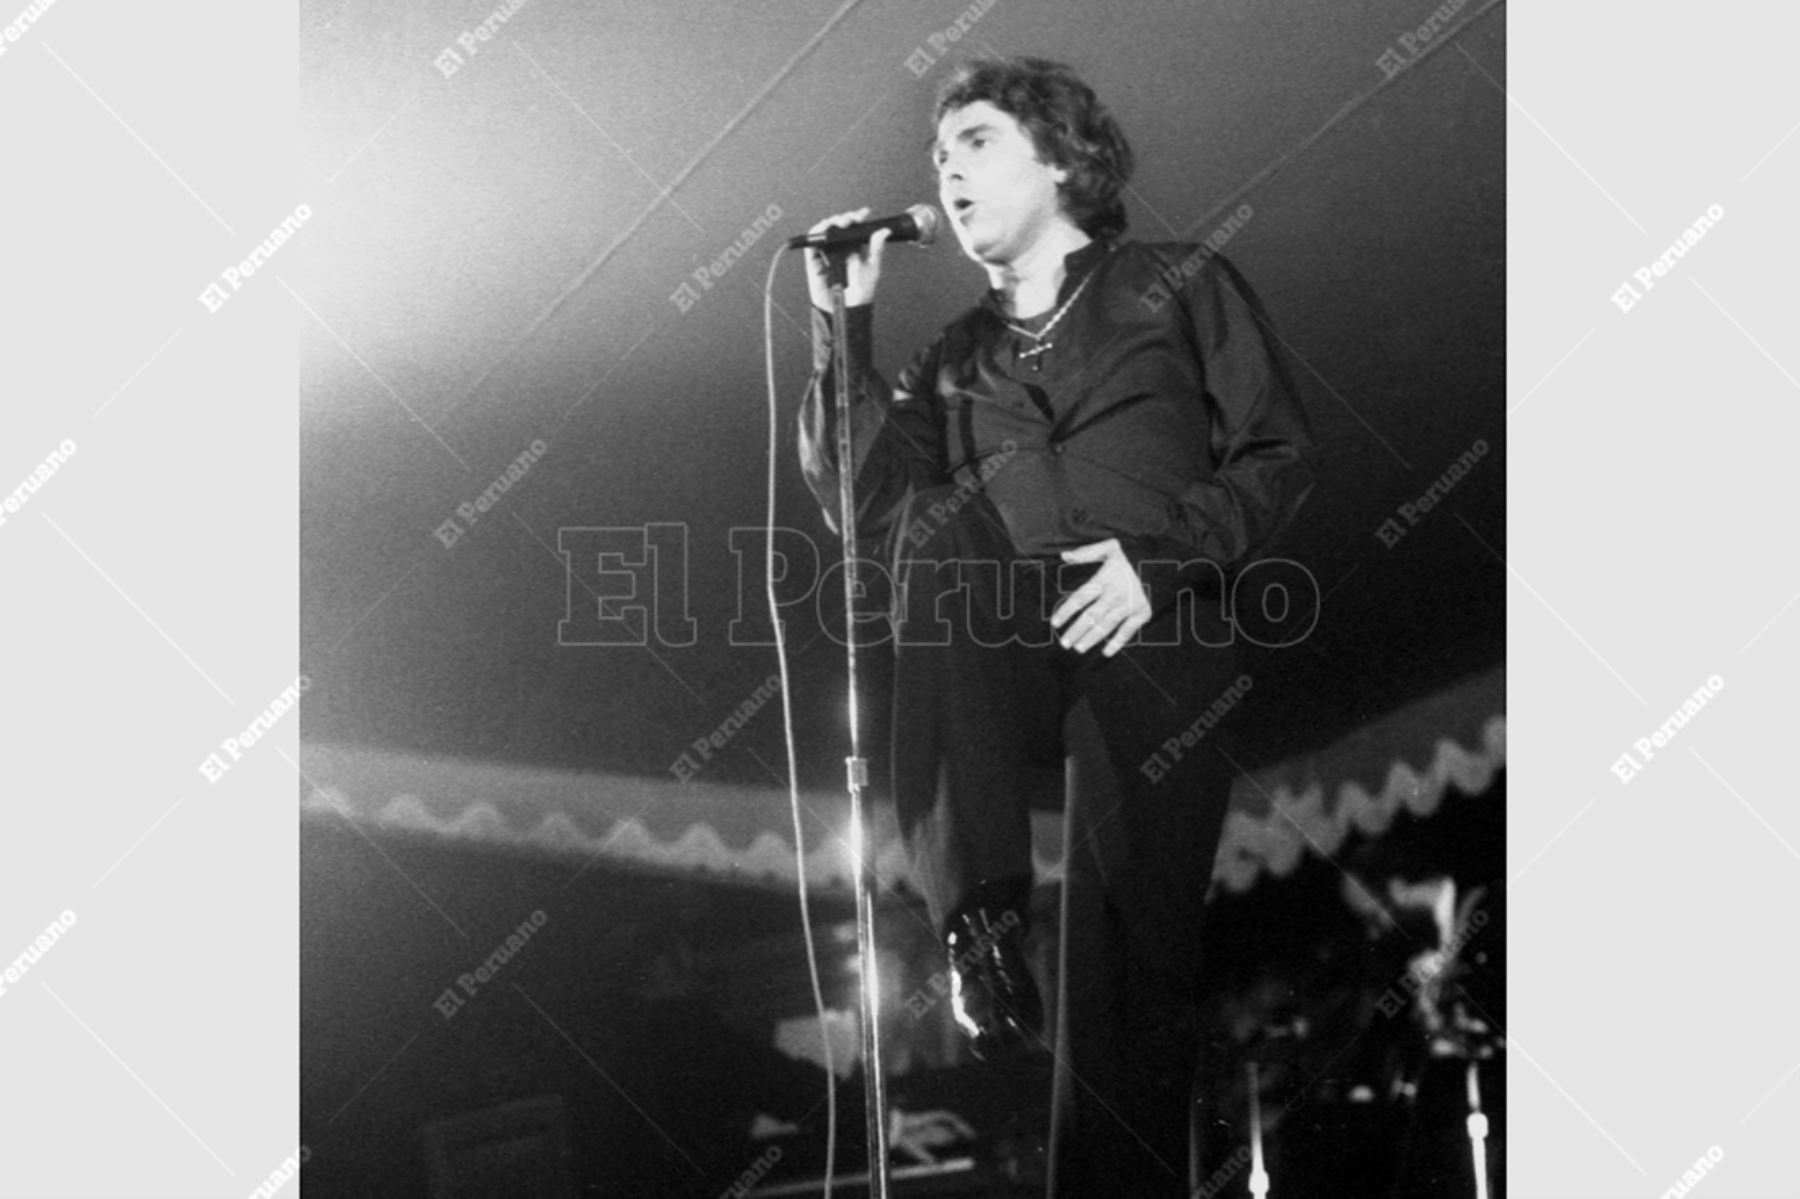 Lima - 3 octubre 1981 / El cantante español Raphael brindó más de 30 canciones en su concierto en el Country Club. Foto: Archivo Histórico de El Peruano / Pavel Marrul